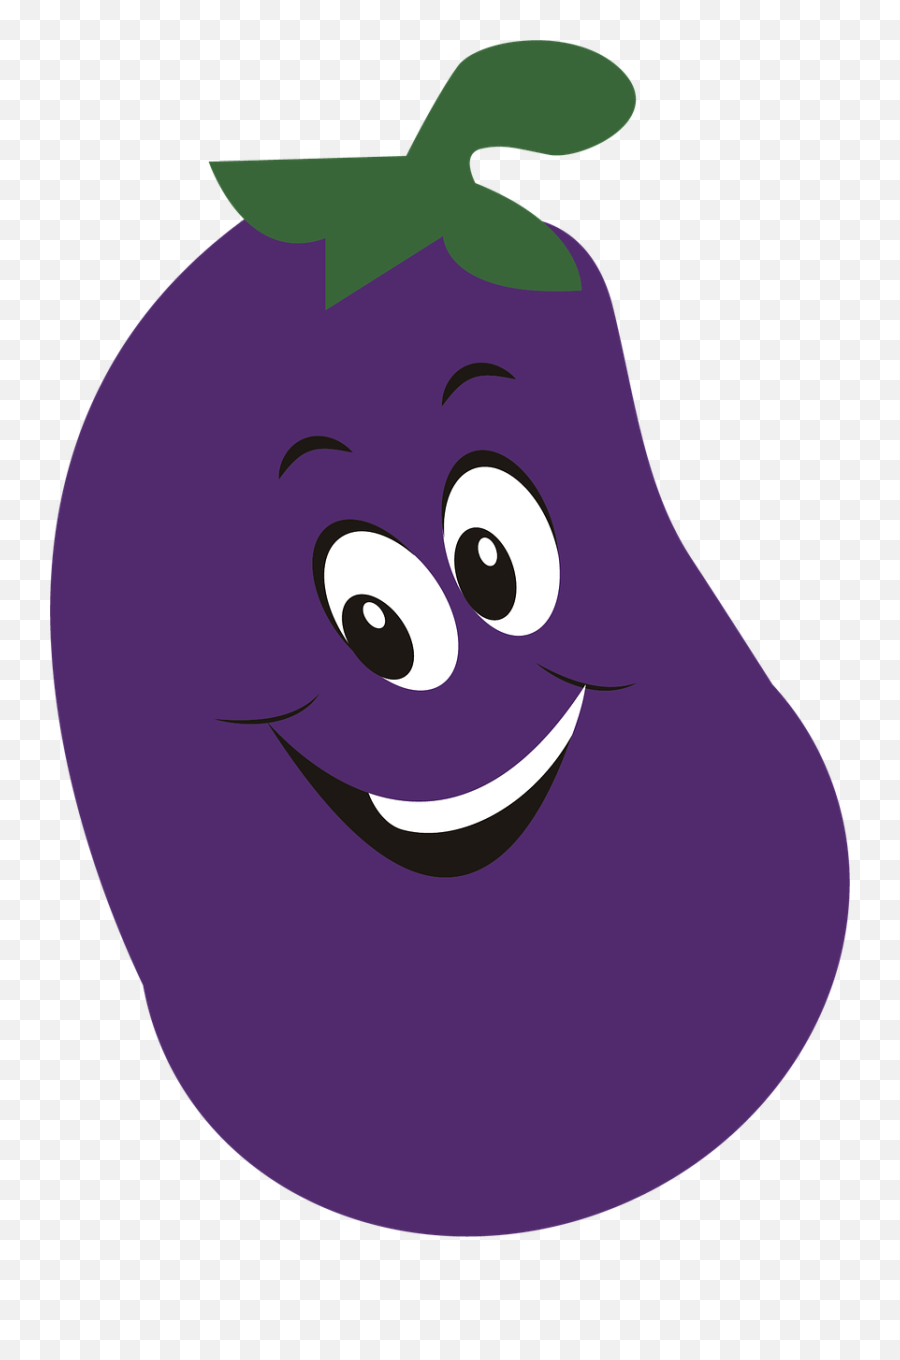 Eggplant Png - Vegetable Food Eggplant Violet Healthy Cartoon Vegetabl,Eggplant Transparent Background